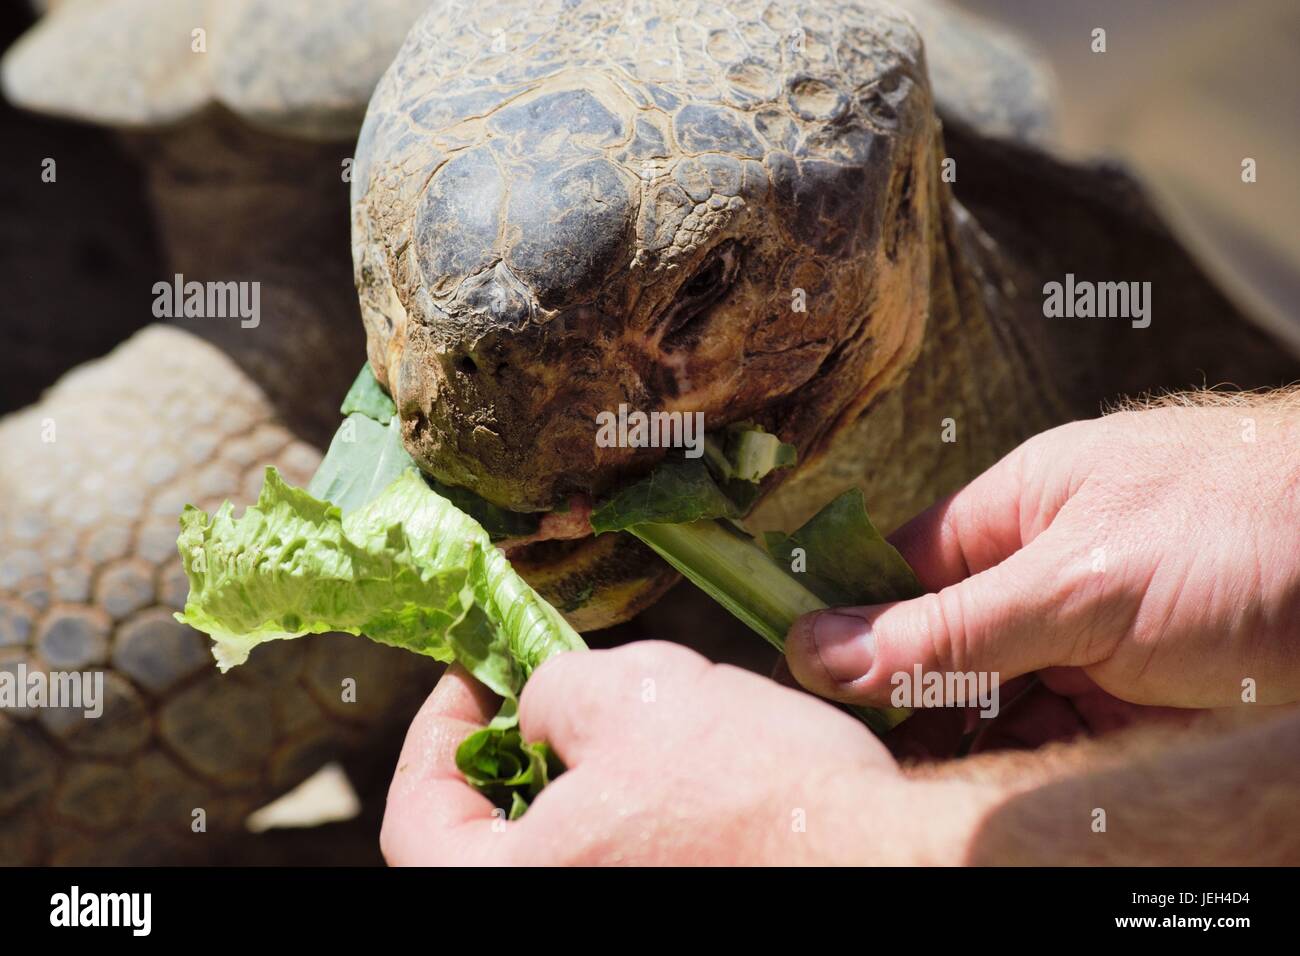 Tortoise at San Diego Zoo Stock Photo